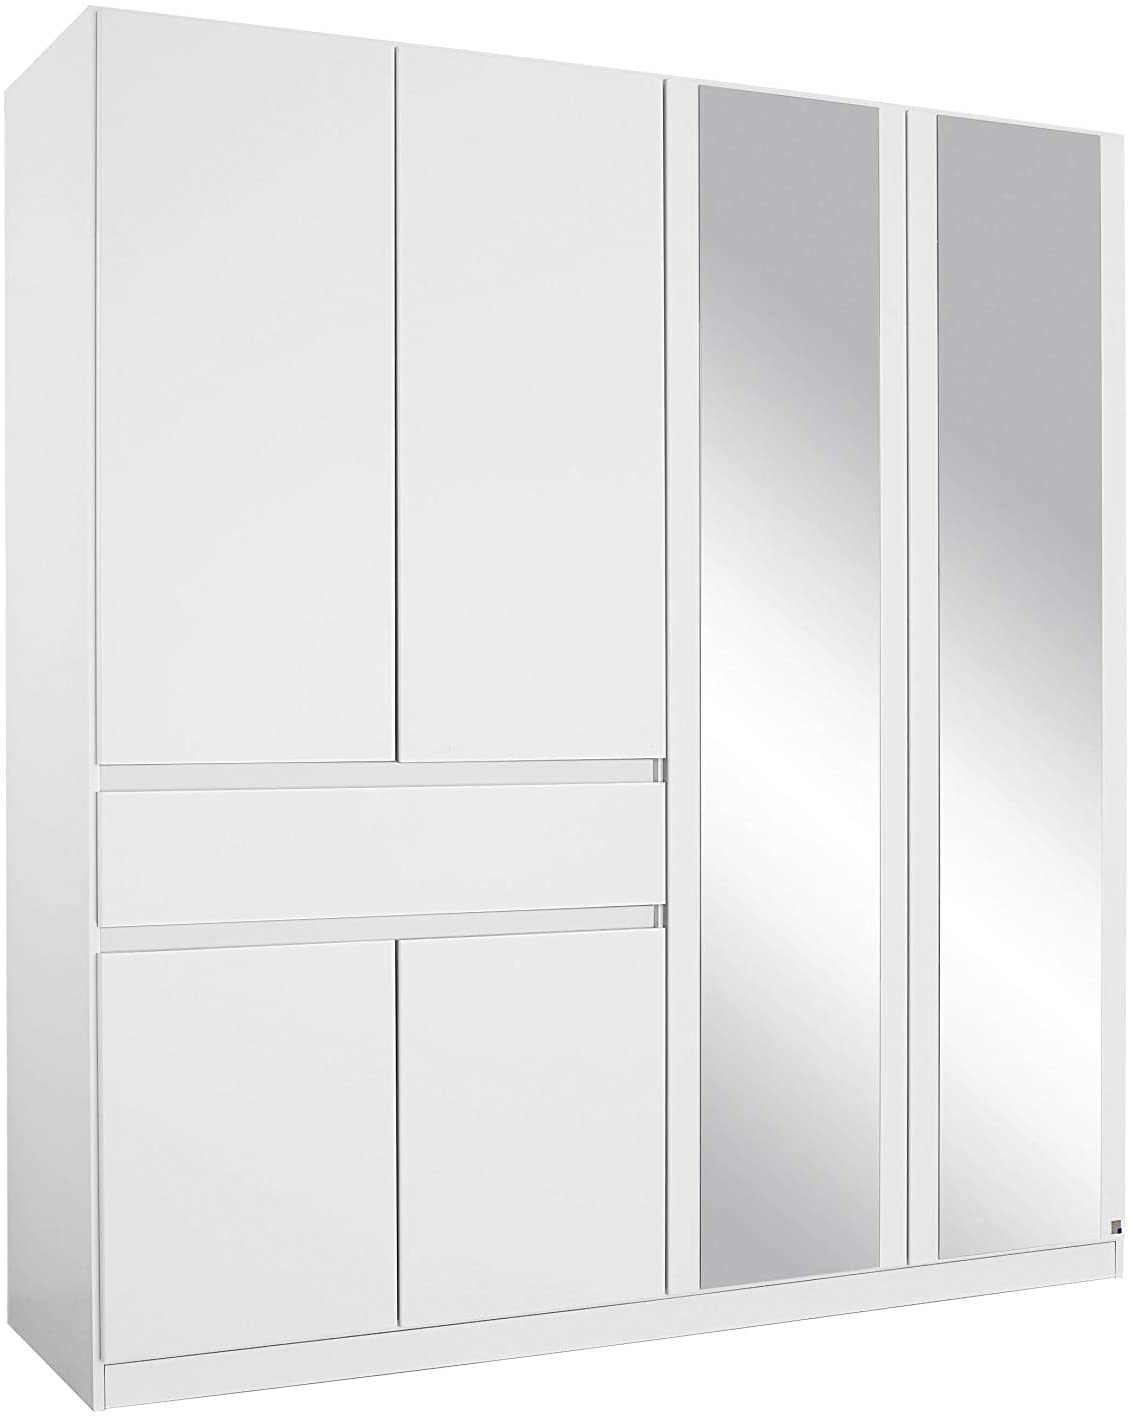 Spiegel Schrank Kleiderschrank Drehtürenschrank in Weiß mit Spiegel Schubladen 6-türig, 3 Einlegeböden Kleiderstange BxHxT 181x197x54 cm